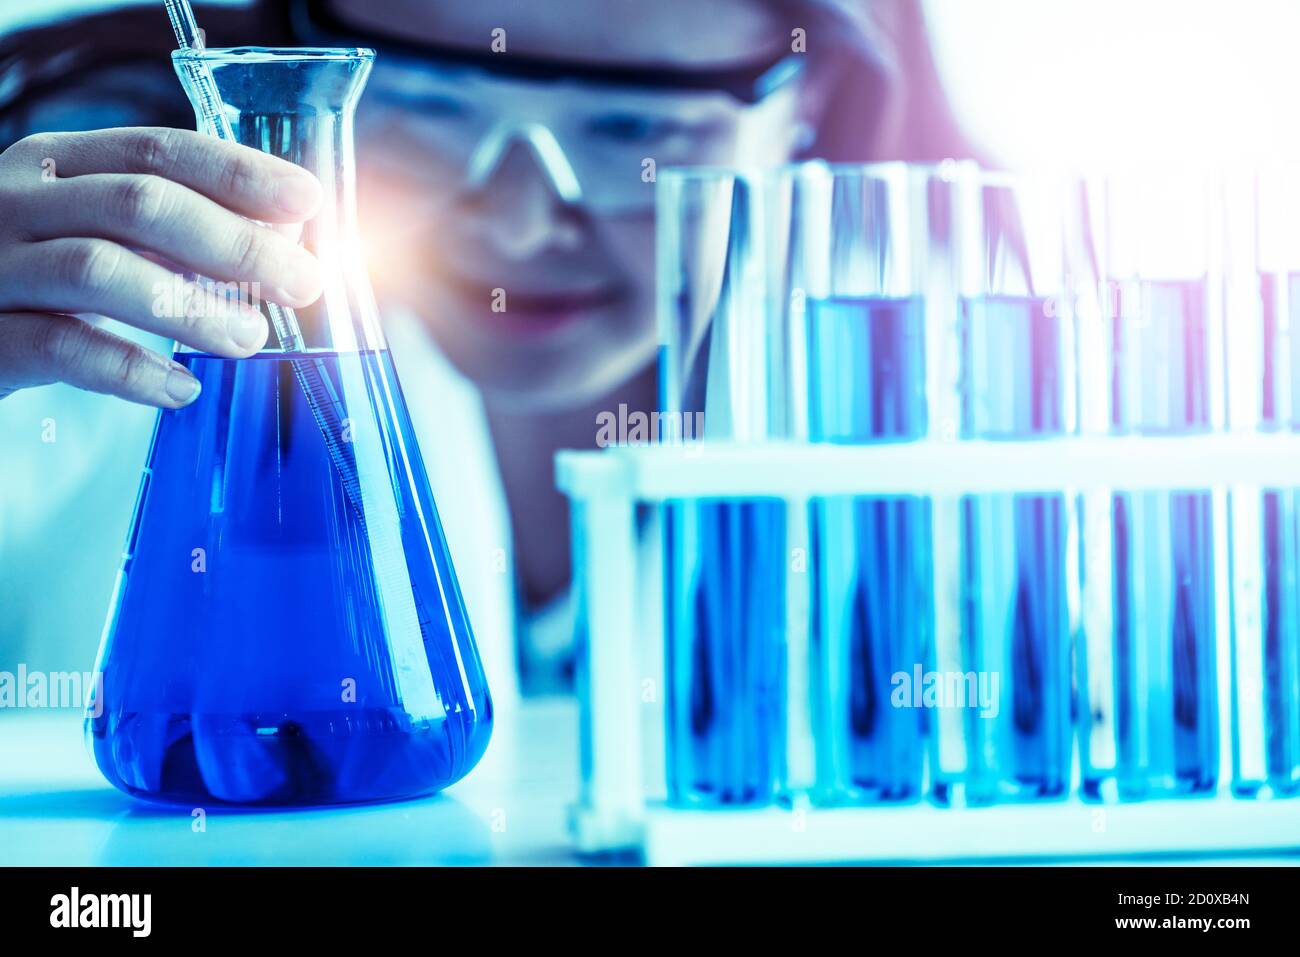 Wissenschaftlerin im Labor arbeiten und Prüfung Biochemie Probe im Reagenzglas. Wissenschaft Technologie Forschung und Entwicklung Studie Konzept. Stockfoto